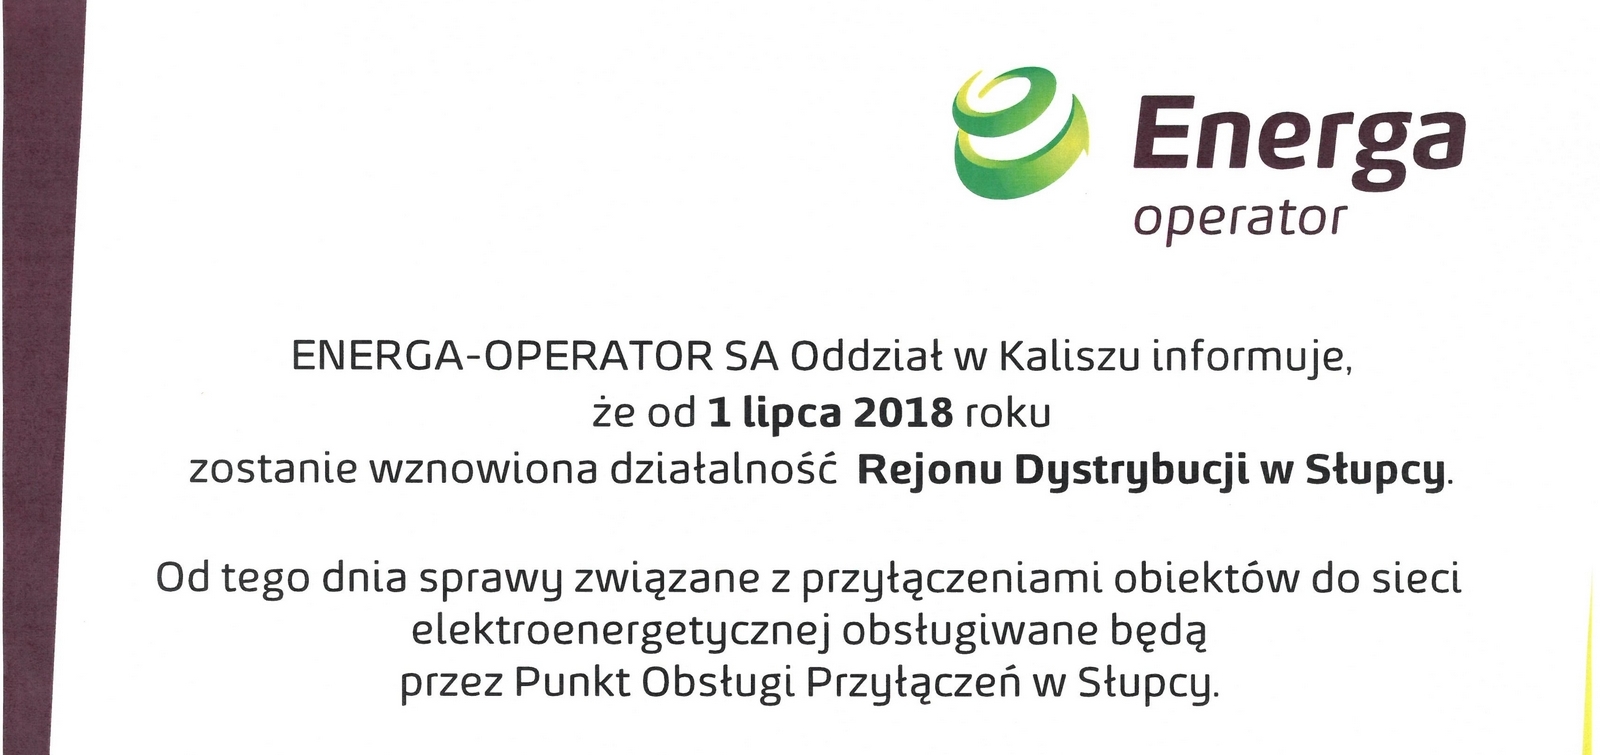 ENERGA - OPERATOR SA Oddział w Kaliszu informuje, że od 1 lipca 2018 r. zostanie wznowiona działalność Rejonu Dystrybucji w Słupcy